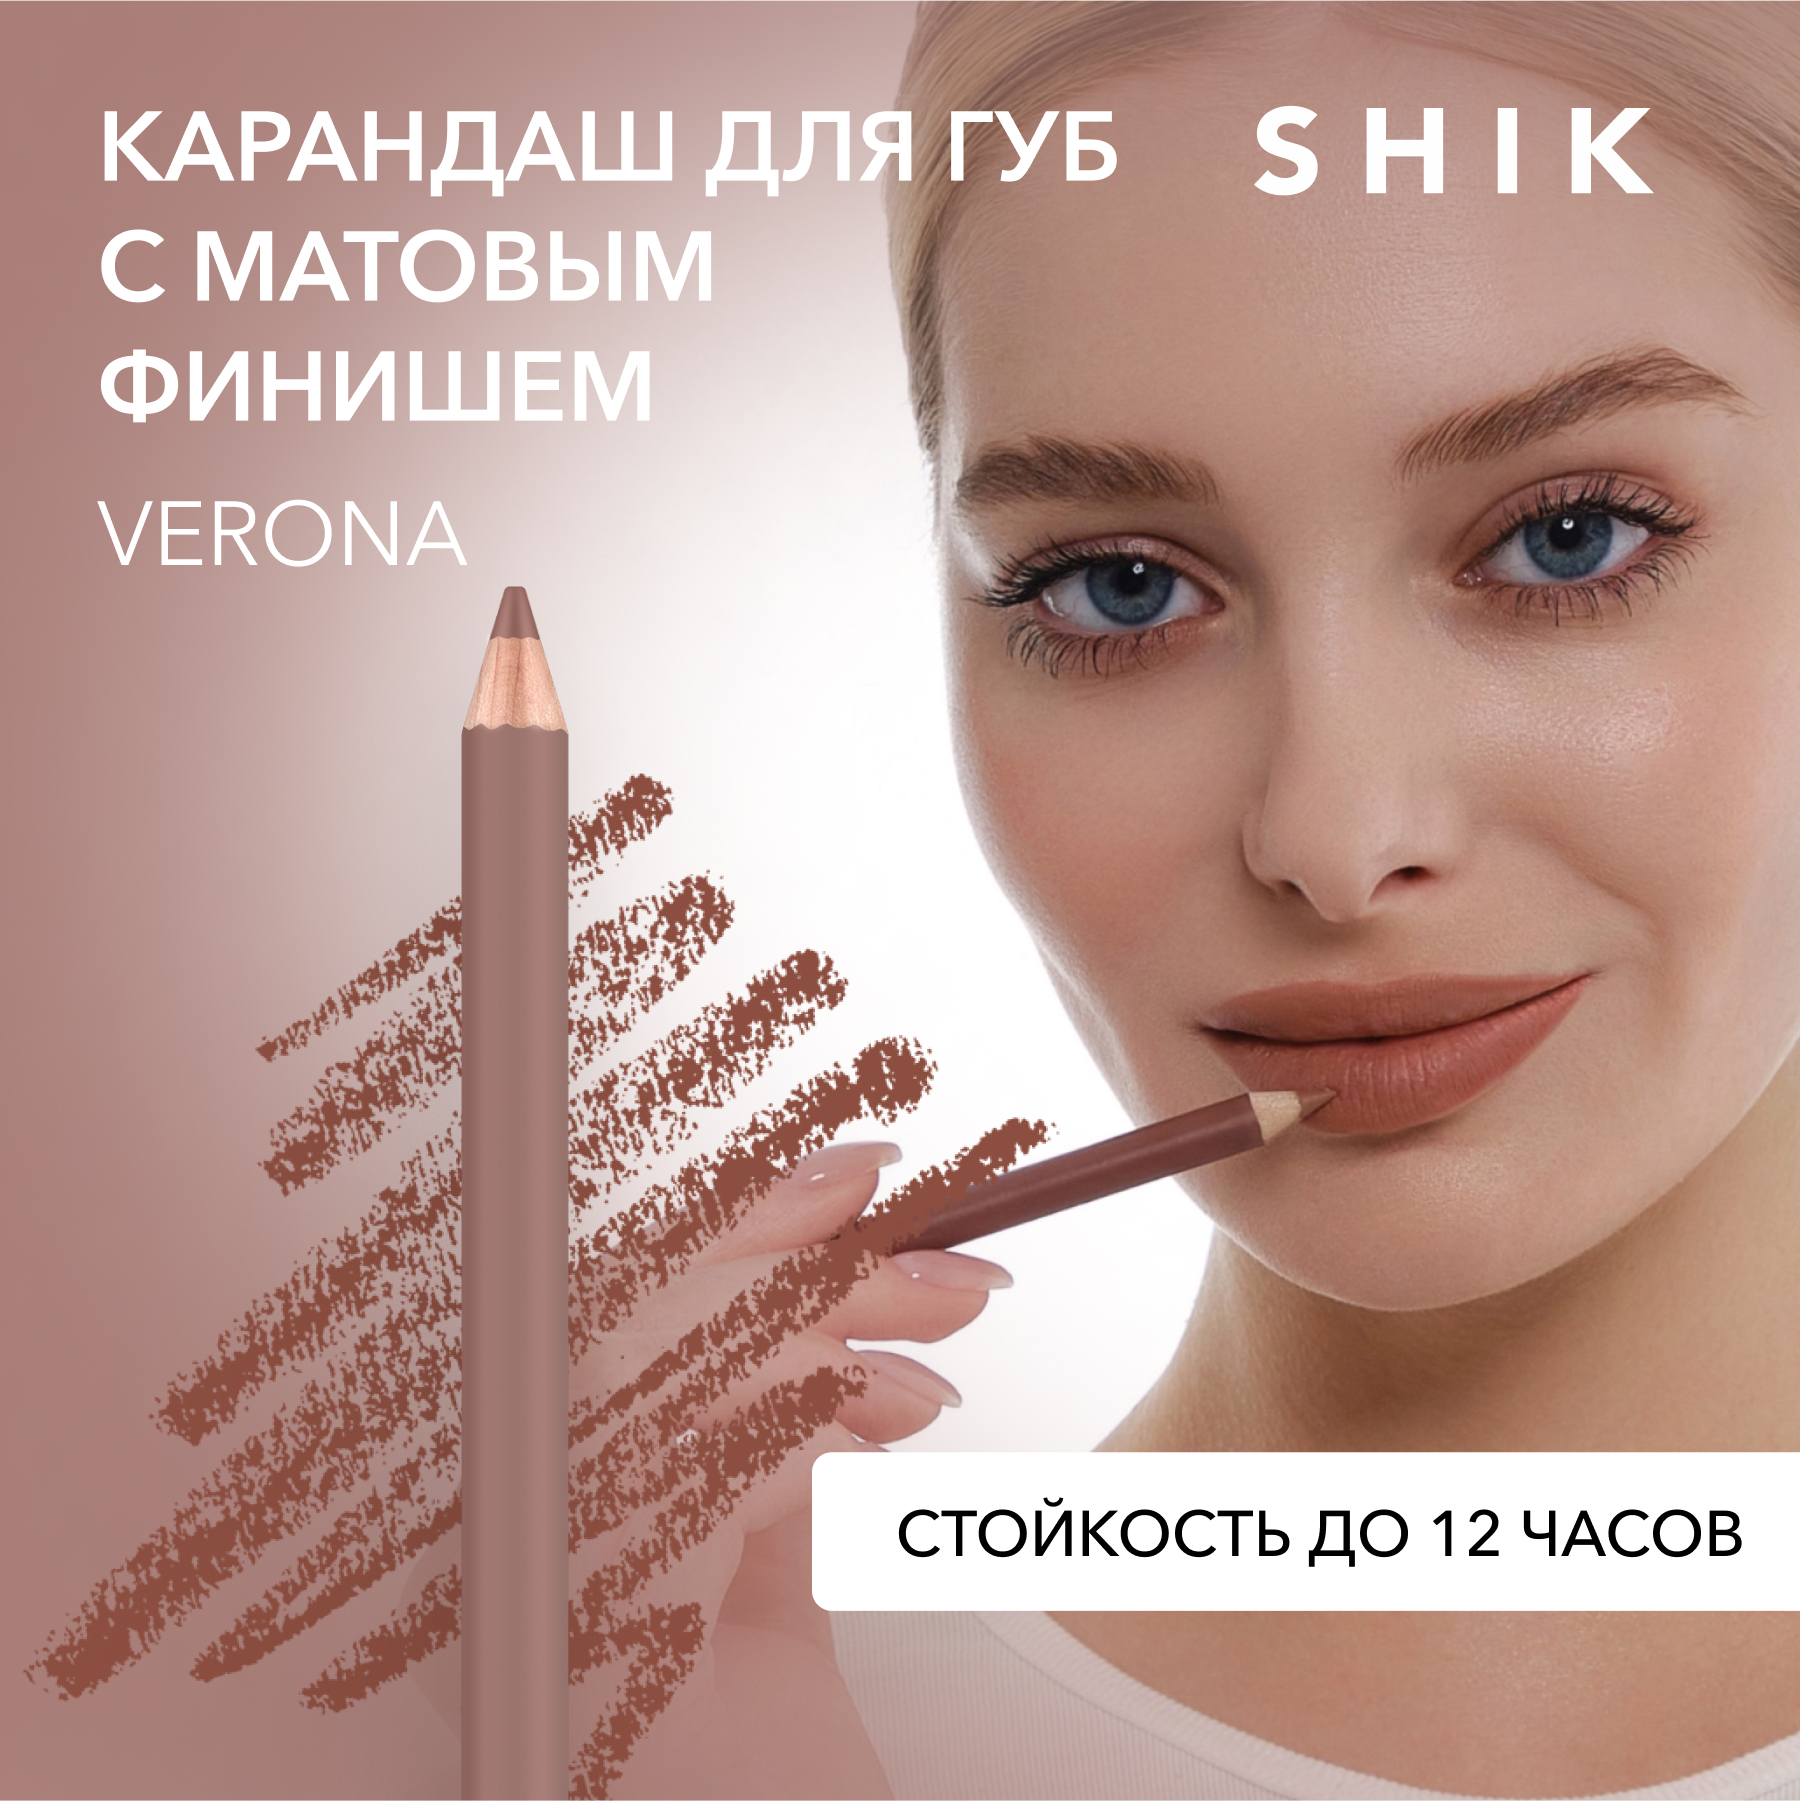 Карандаш для губ SHIK Lip Pencil тон Verona 1,14 г shik карандаш для губ lip pencil verona 12 гр